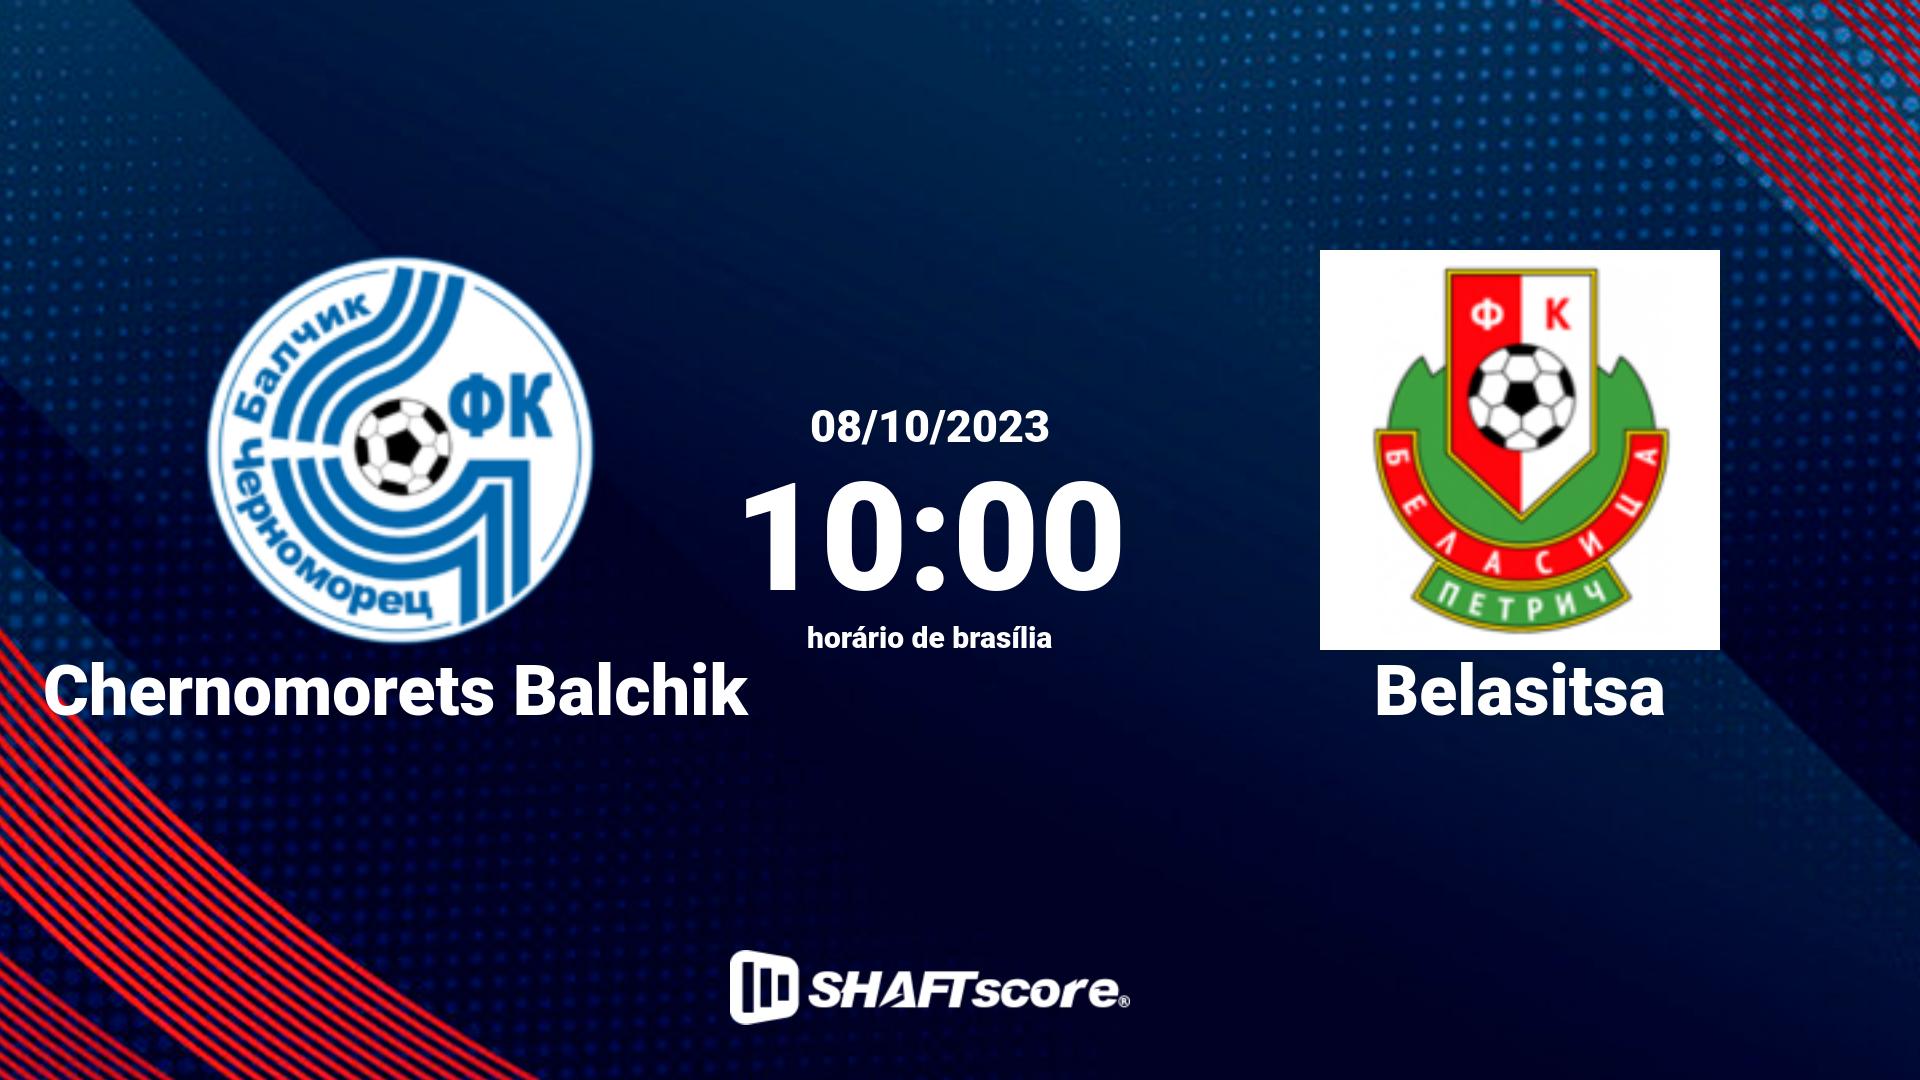 Estatísticas do jogo Chernomorets Balchik vs Belasitsa 08.10 10:00